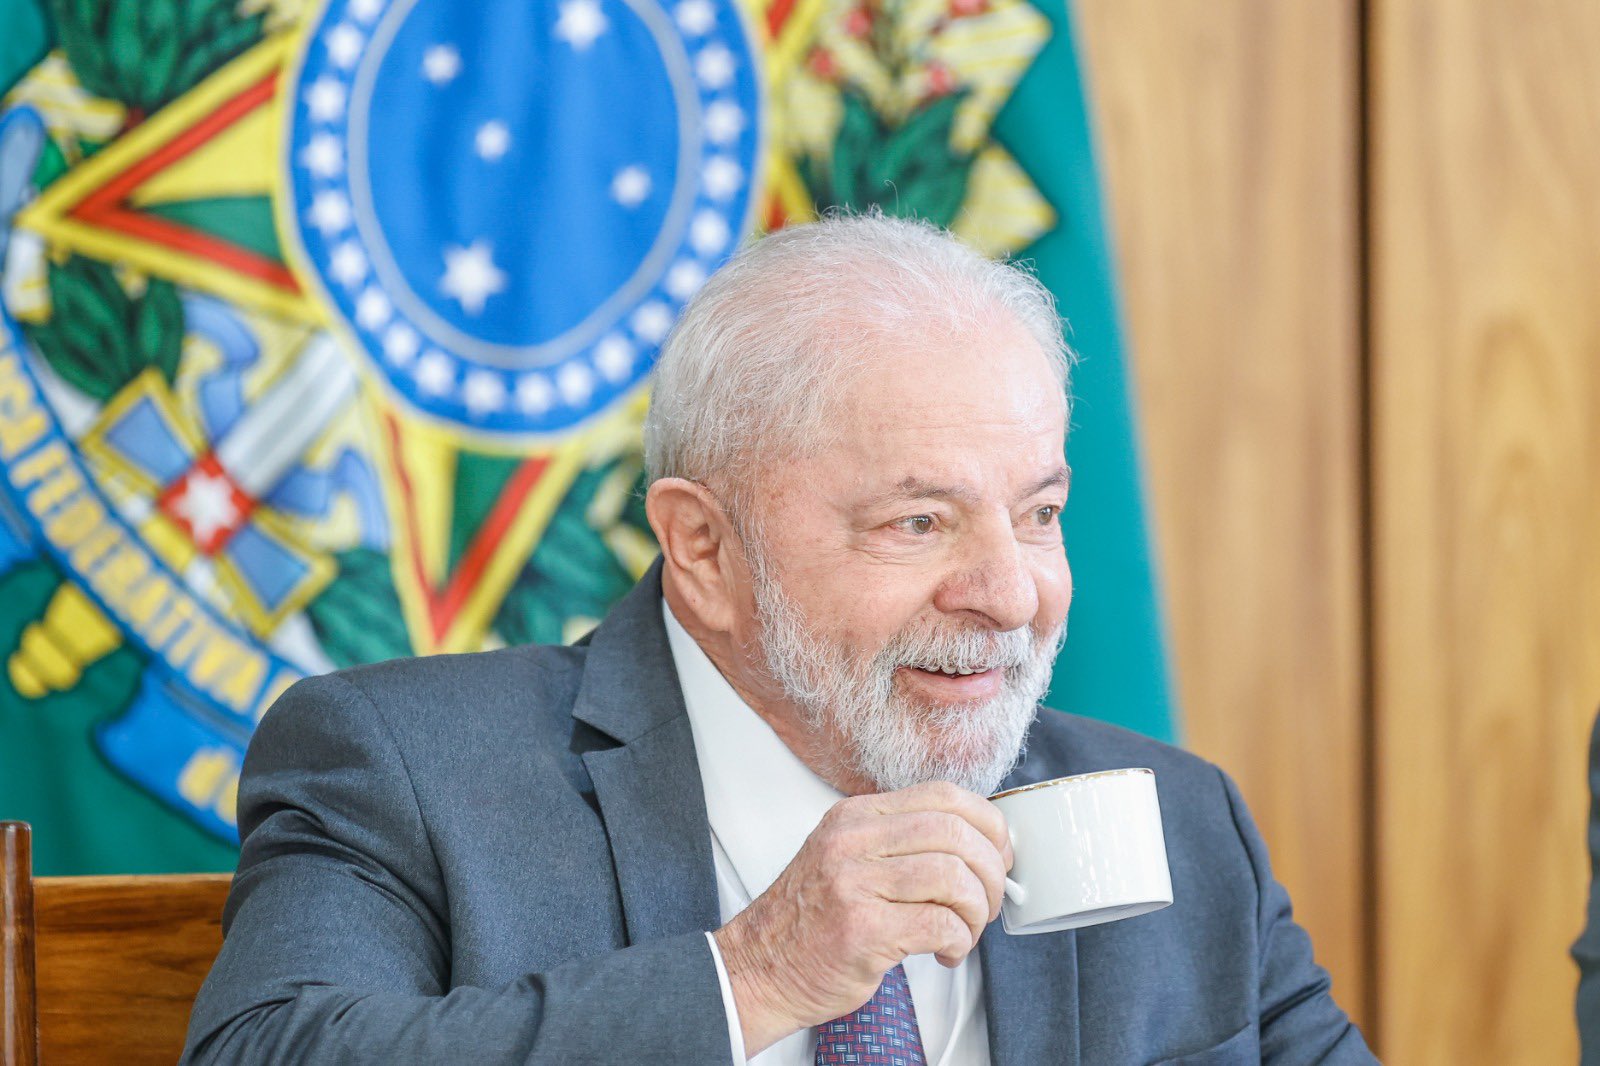 Aprovação de Lula como presidente sobe de 51% em abril para 56% em junho de acordo com pesquisa da Genial/Quaest -Foto: Ricardo Stuckert/PR